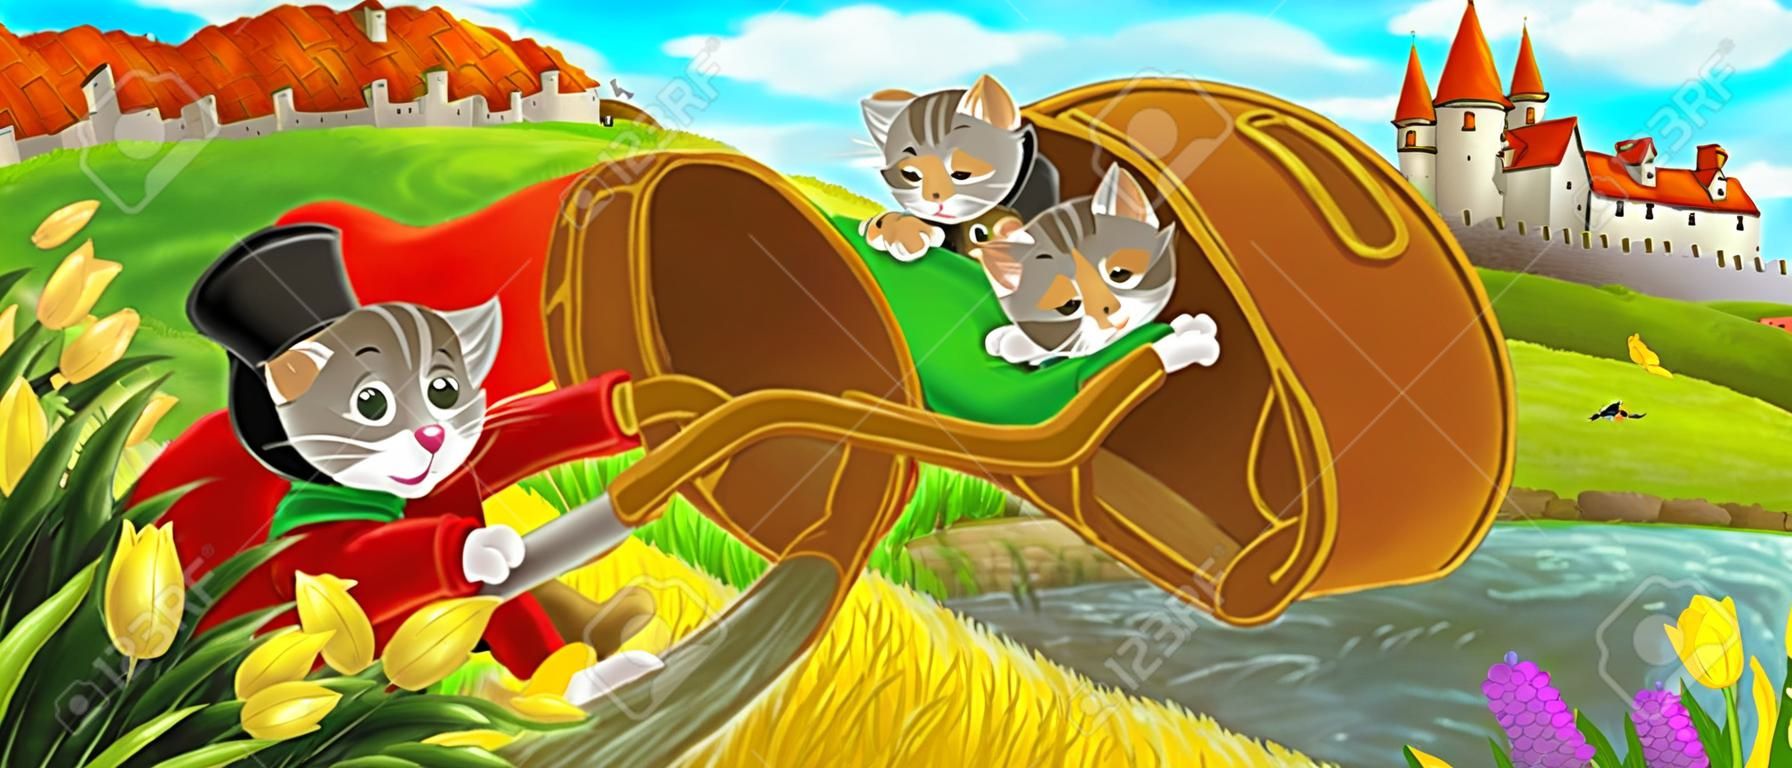 Scena kreskówki - kot podróżujący do zamku na wzgórzu z chłopcem rolnikiem - ilustracja dla dzieci